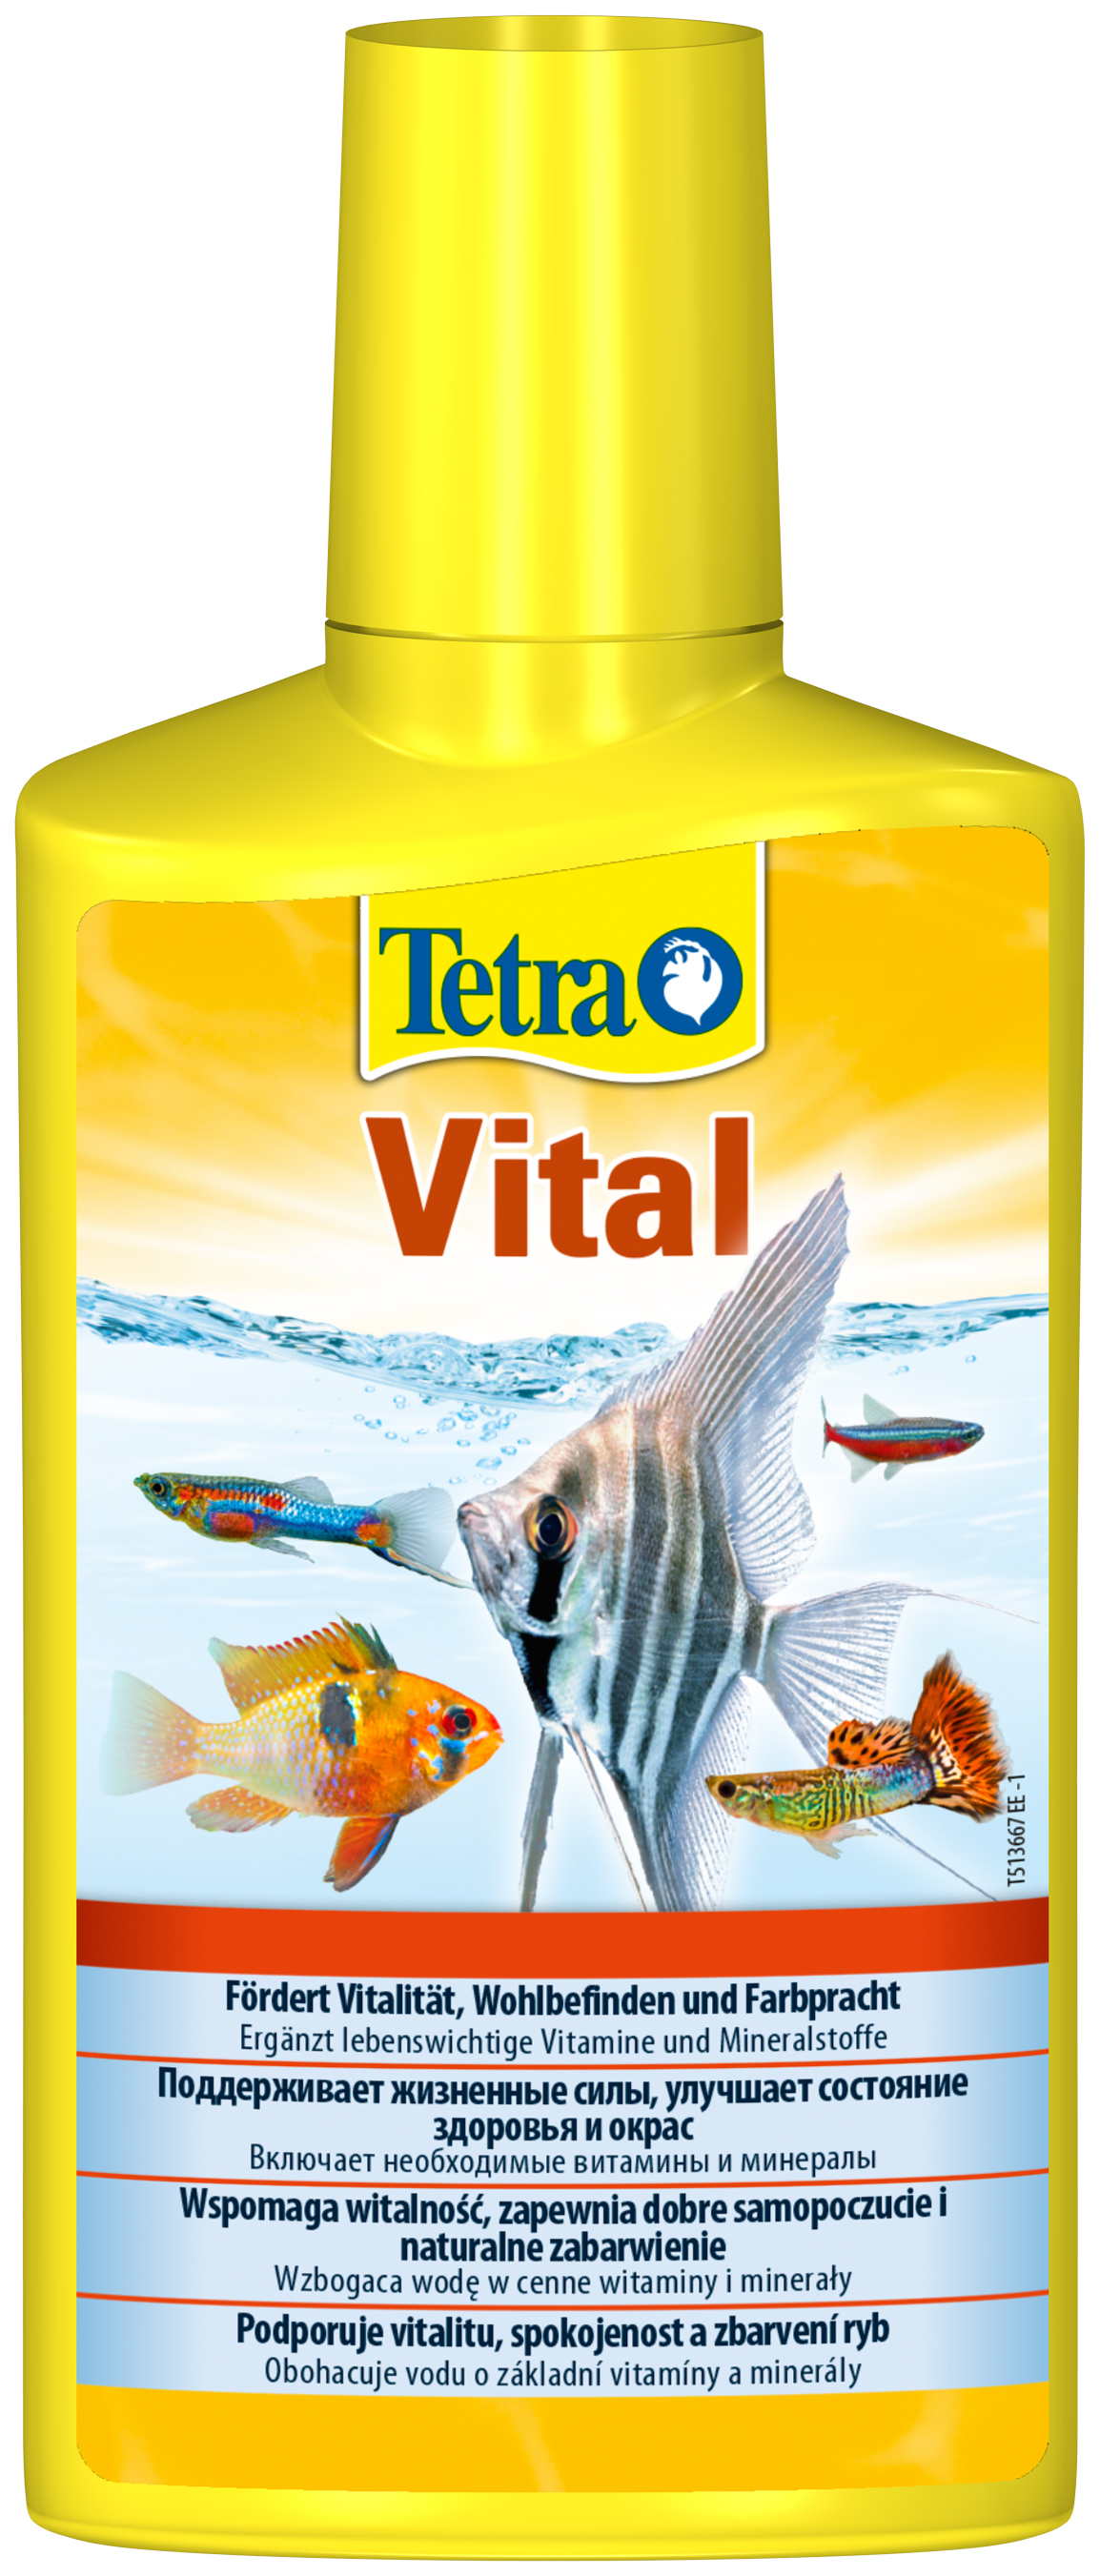 Средство Tetra Vital для создания и поддержания условий в аквариуме, 2 шт по 250 мл